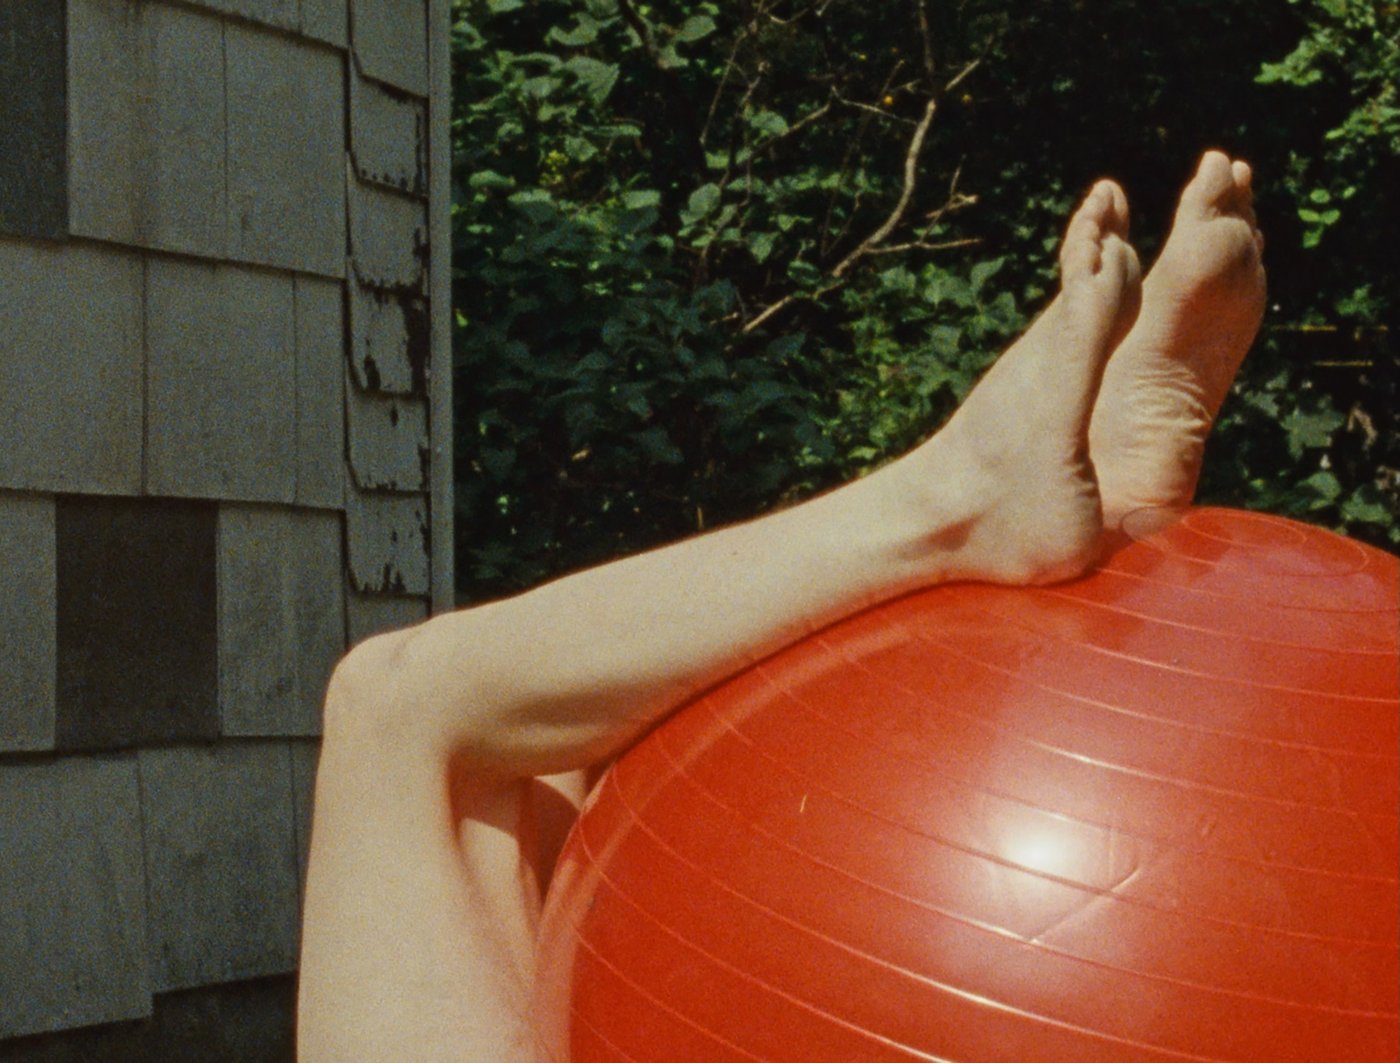 Fotografie von Beinen die auf einem roten Gymnastikball lehnen, im Hintergrund eine grüne Hecke und ein Teil einer Hauswand